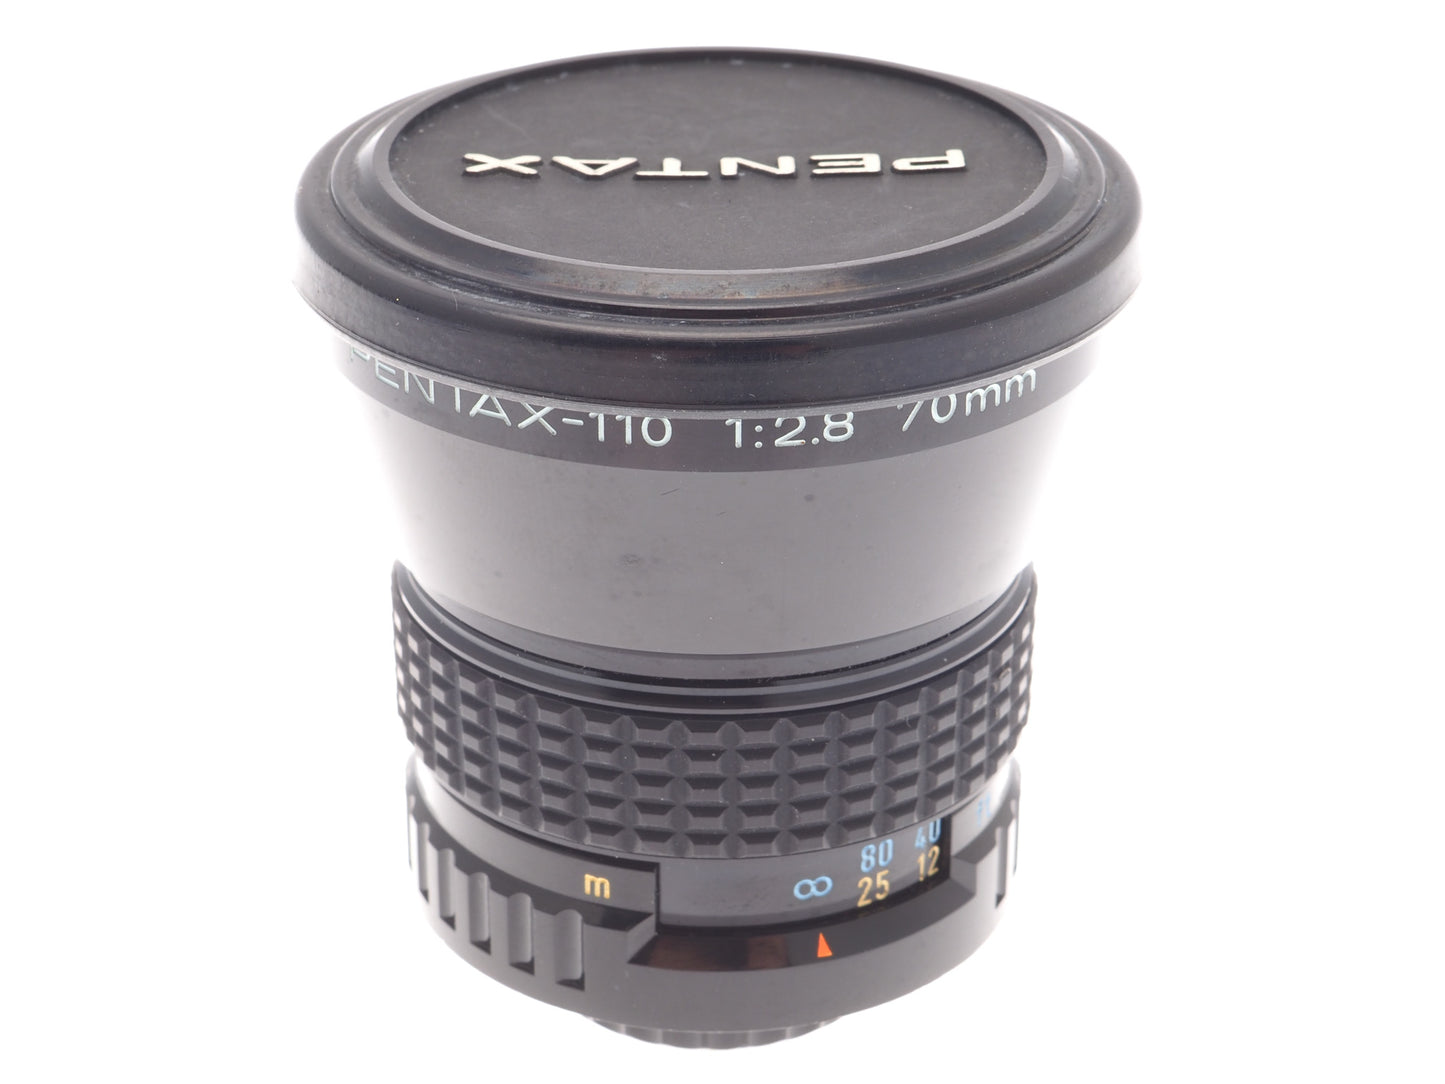 Pentax 70mm f2.8 Pentax-110 - Lens